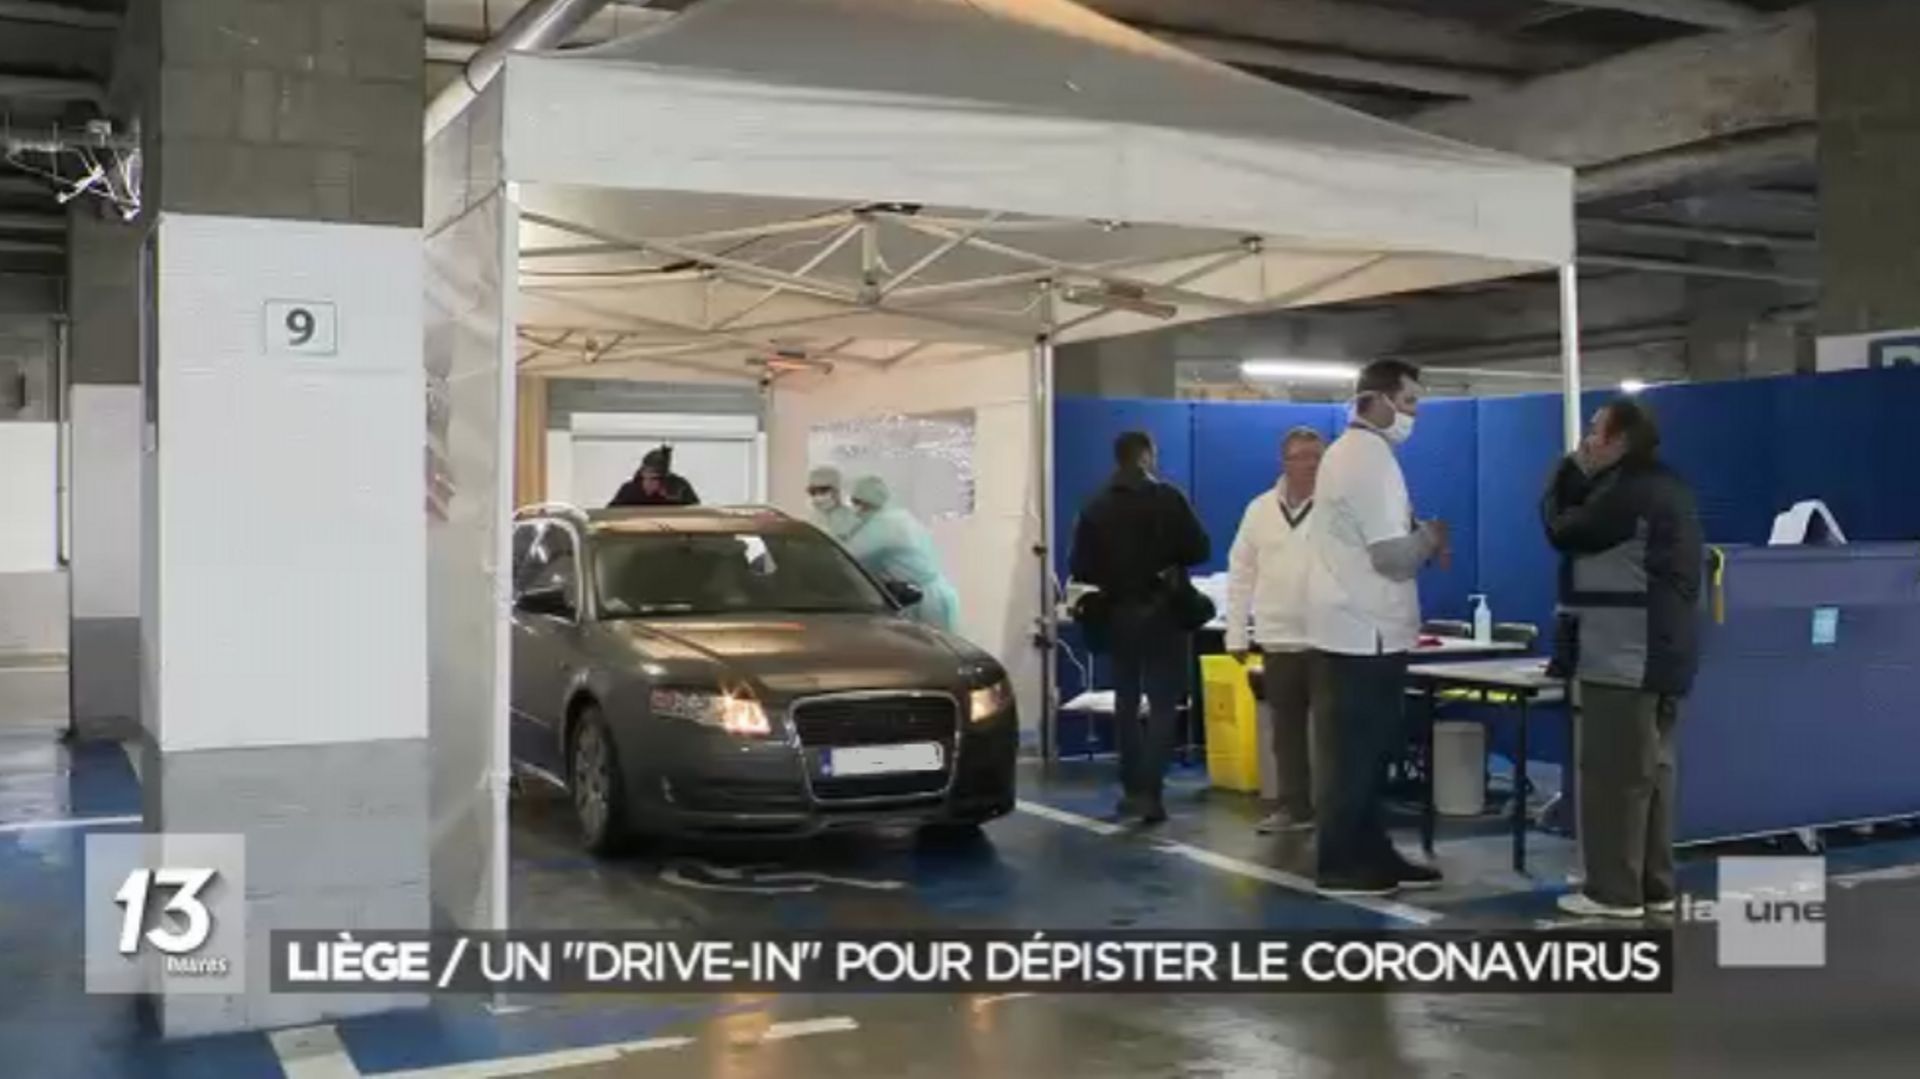 Dépistage du coronavirus: des dizaines de voitures font la file au "labo drive" du CHR de la Citadelle de Liège